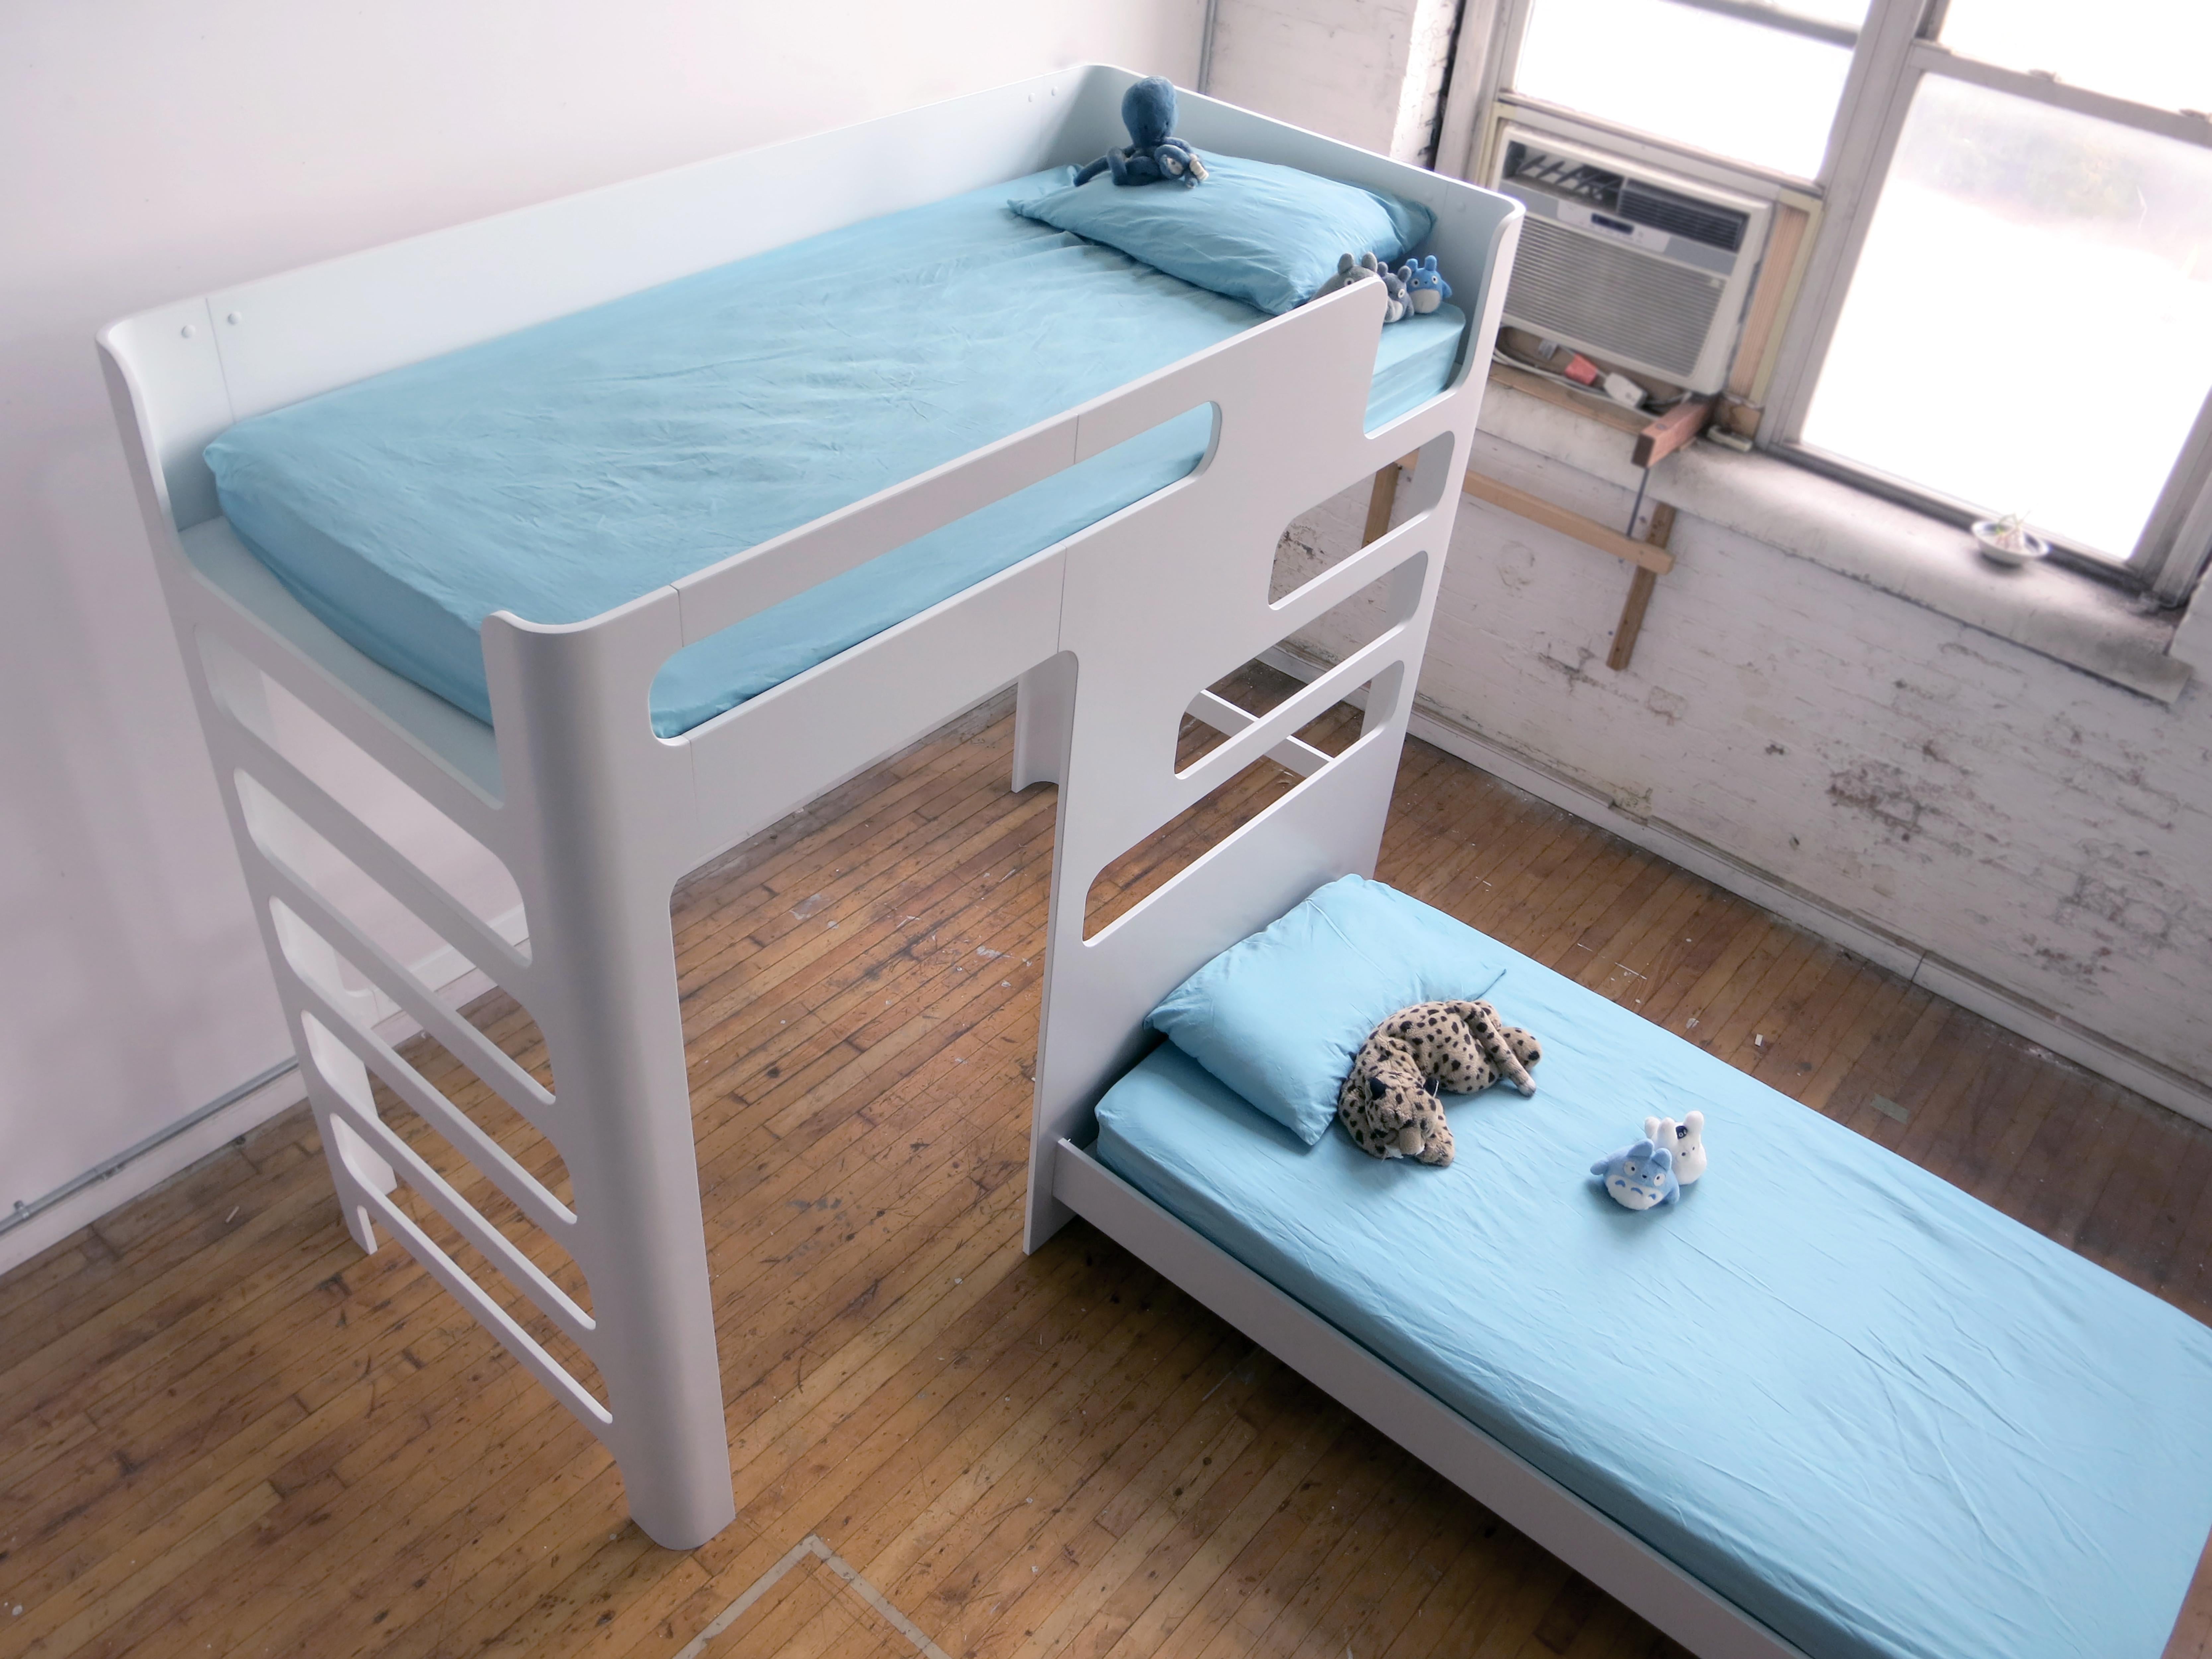 Dies ist ein Etagenbett für Kinder. Wird flach geliefert und lässt sich leicht mit einer einfachen Cam und Schrauben montieren. Hier sind zwei Matratzen in voller Größe abgebildet. Die Haupteinheit ist auf einem 5 Fuß hohen Deck untergebracht.